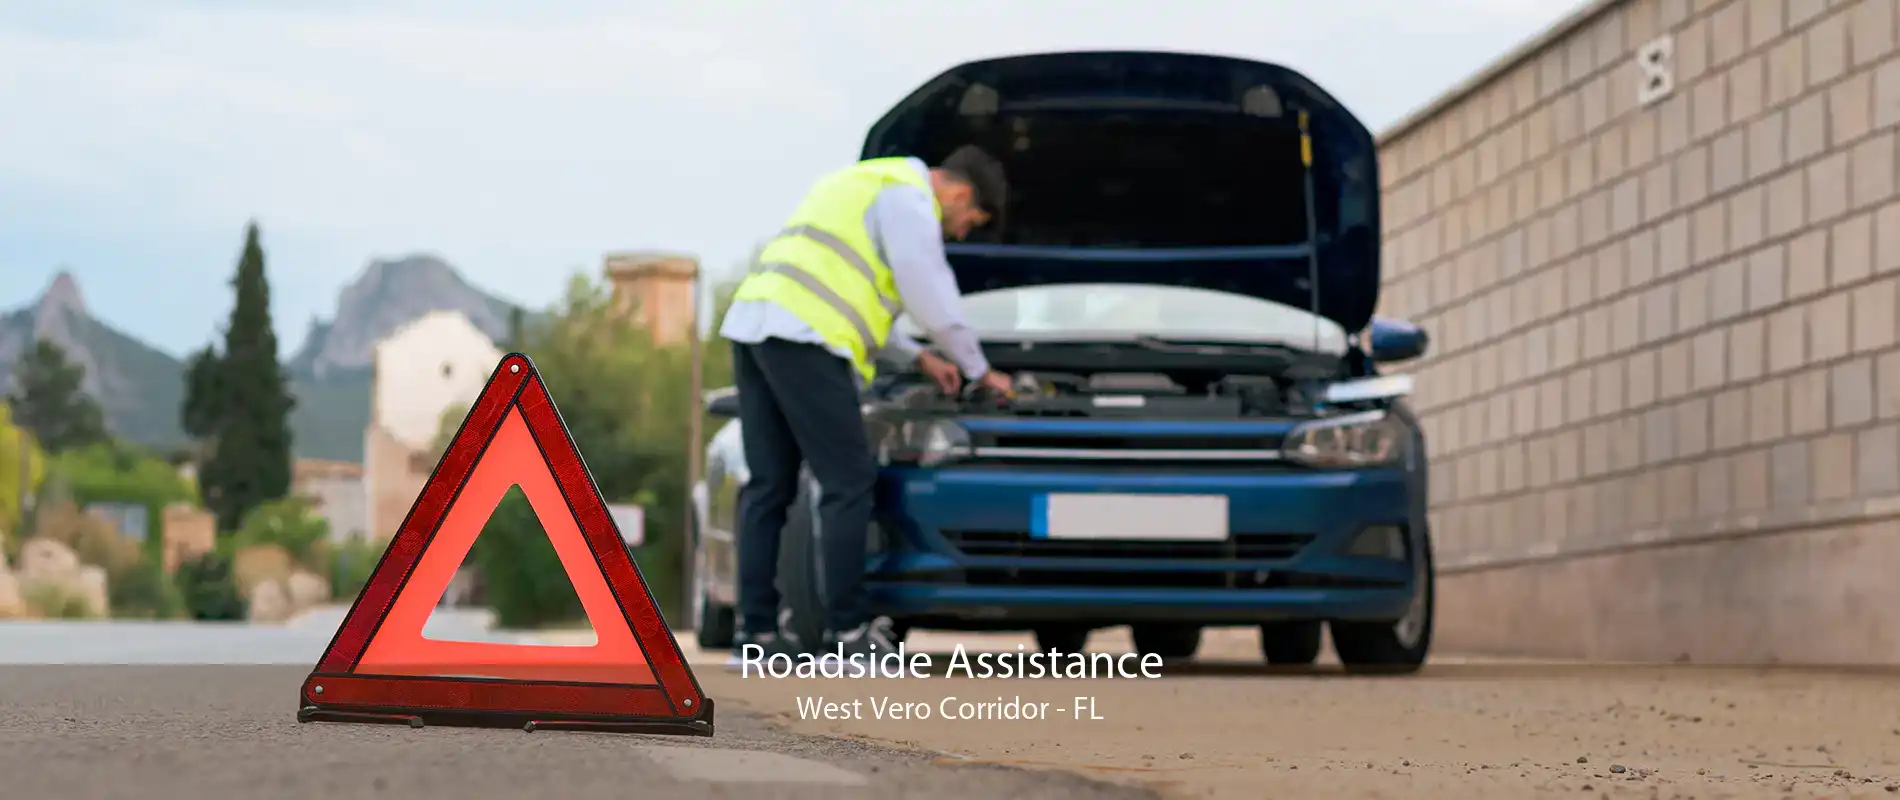 Roadside Assistance West Vero Corridor - FL